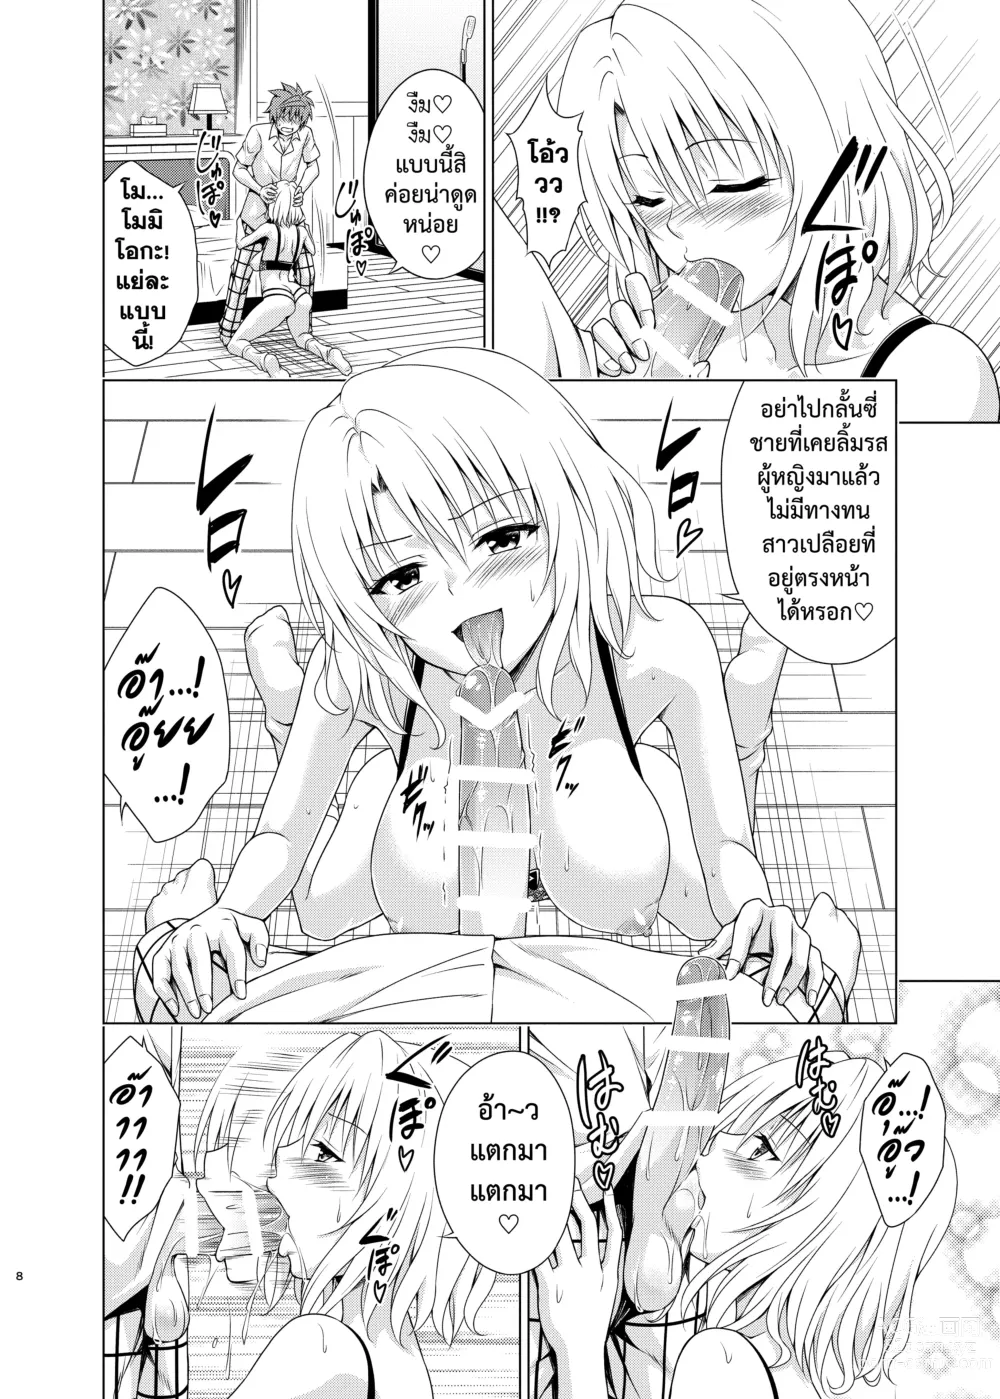 Page 7 of doujinshi ยุทธการฮาเร็ม RX เล่ม.3